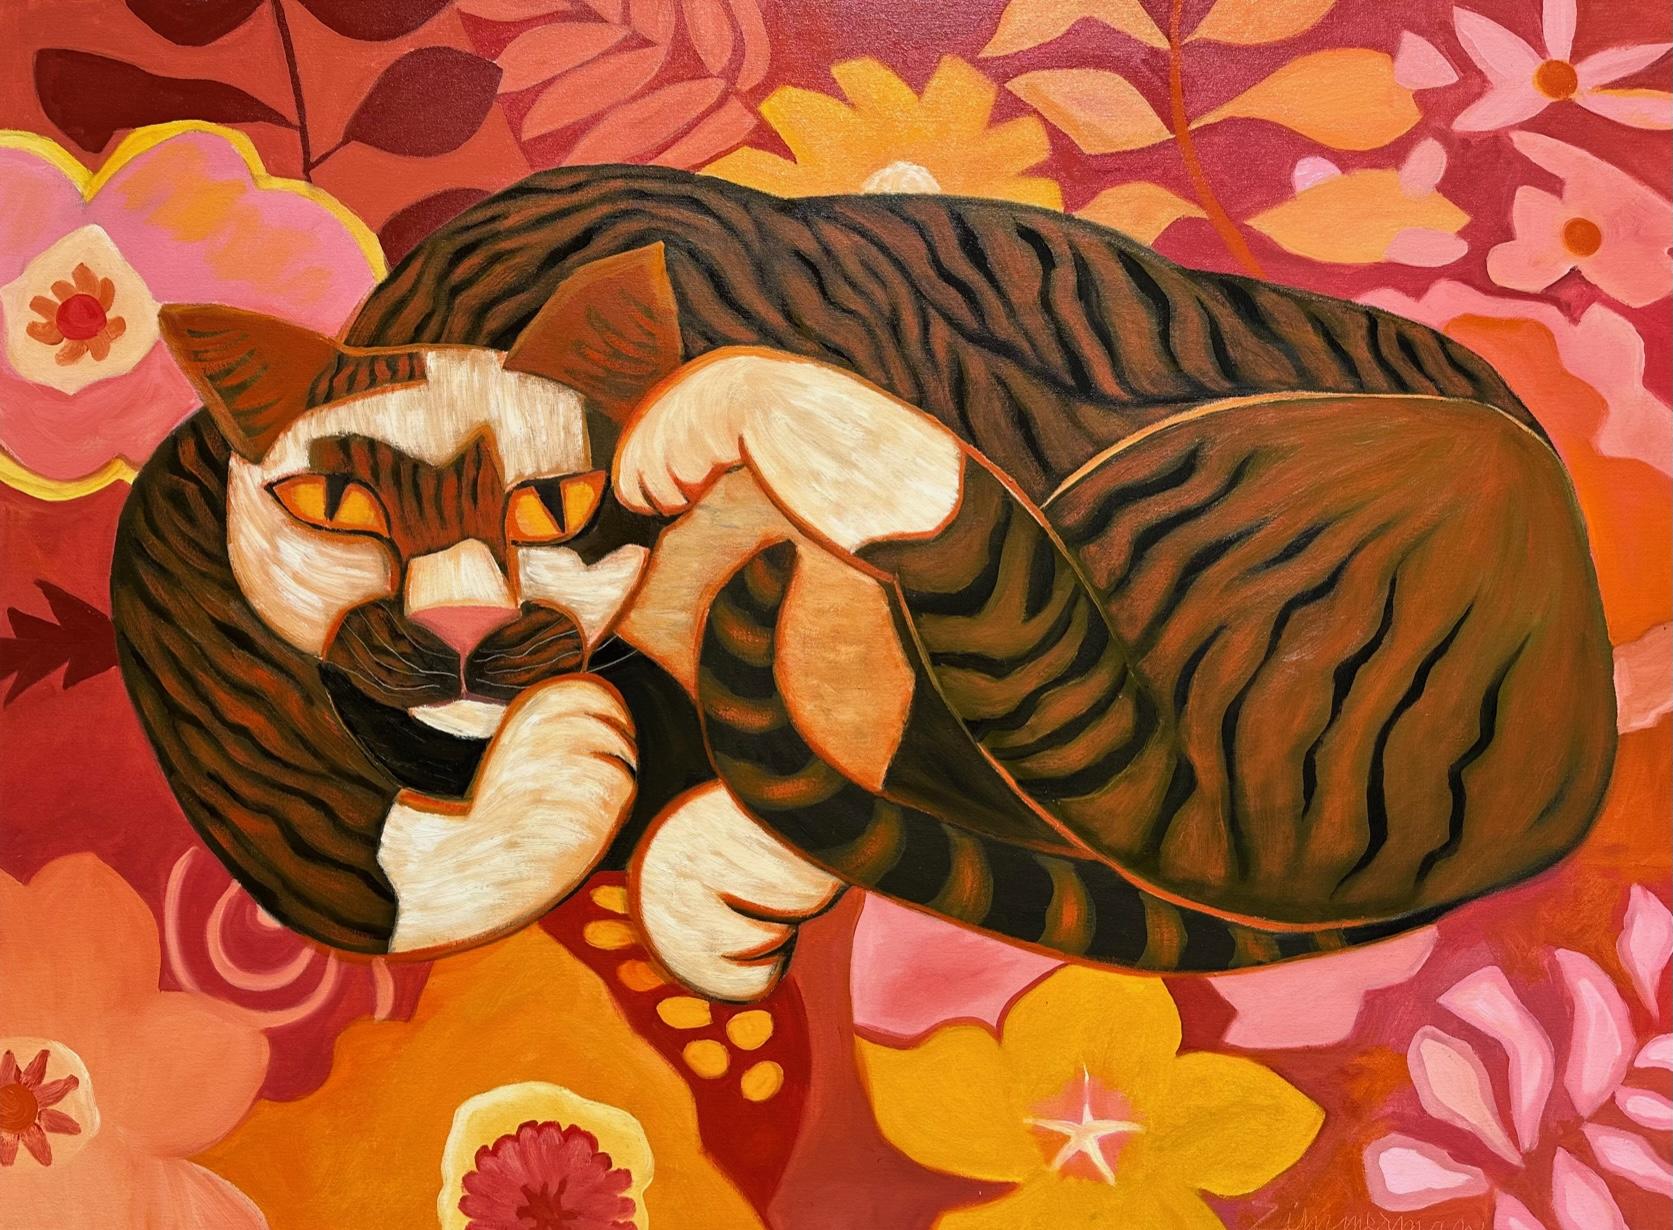 Tom" ist ein fröhliches und lebhaftes Gemälde, das die verspielte und neugierige Natur von Katzen in einer schönen Umgebung einfängt.

Die leuchtenden und kräftigen Farben der Blumen und der Katze können jedem Raum mehr Energie und Verspieltheit